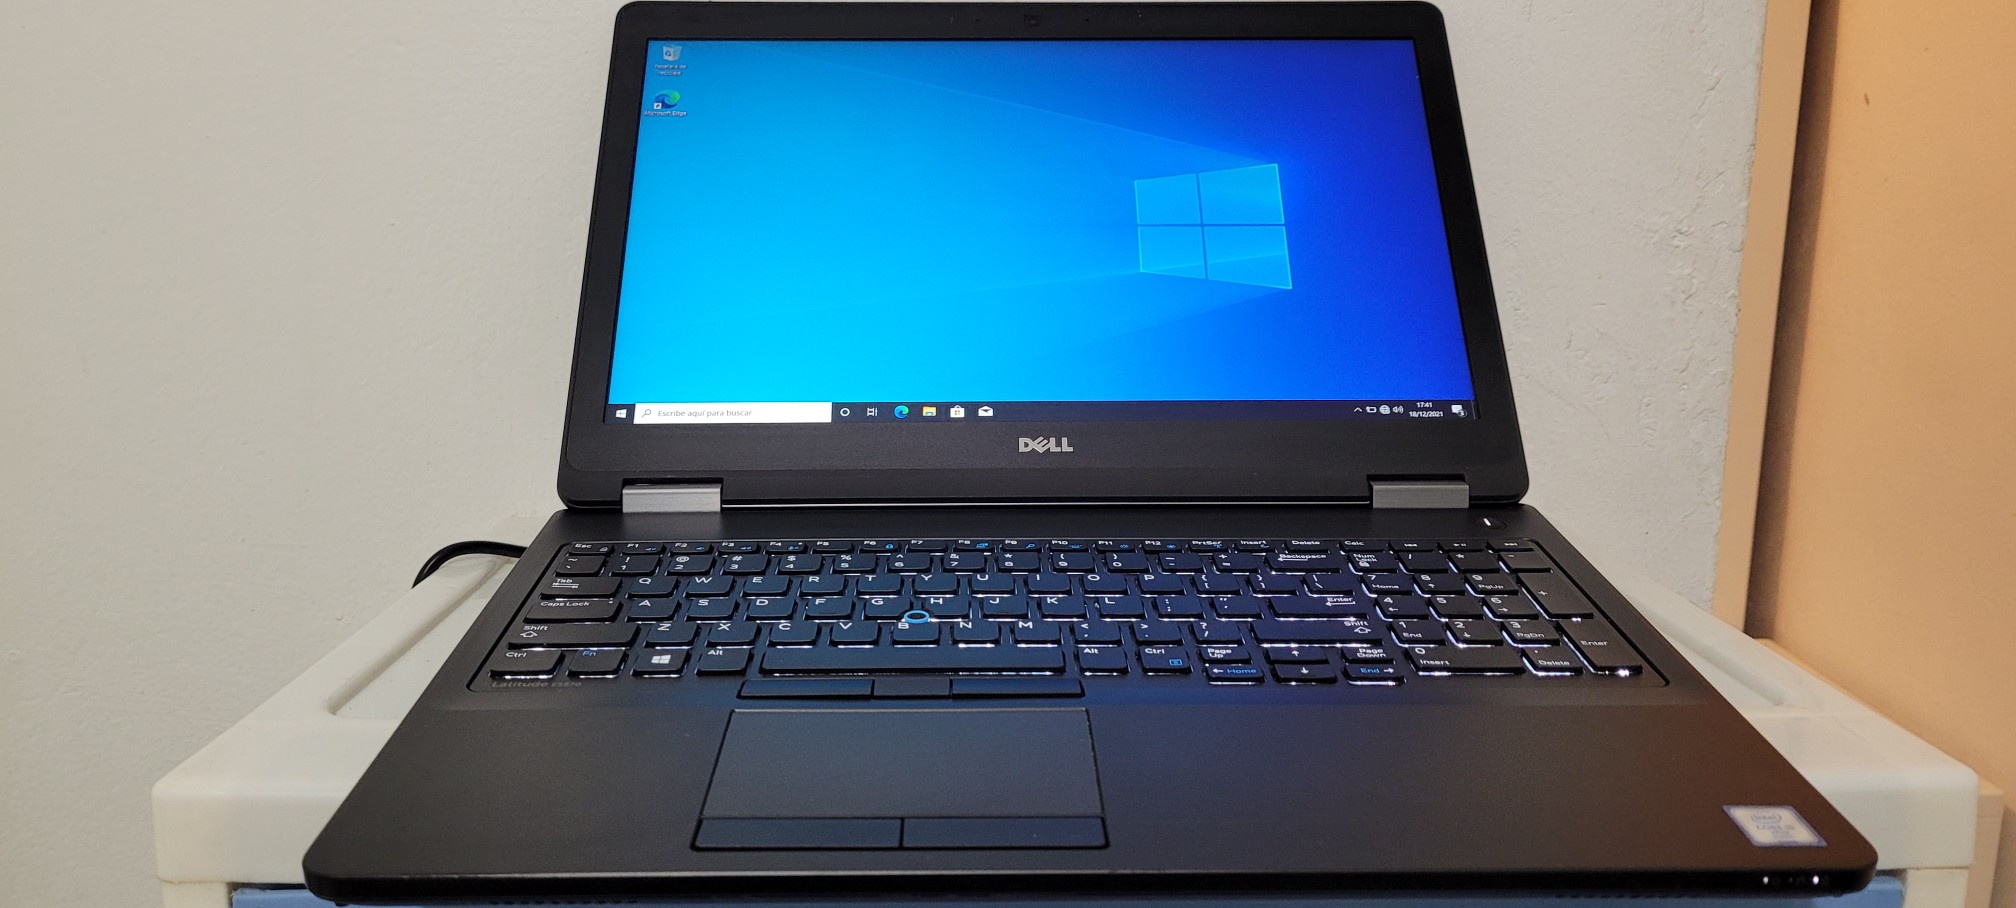 computadoras y laptops - Dell latitude 17 Pulg Core i7 Ram 8gb Disco 1000gb hdmi